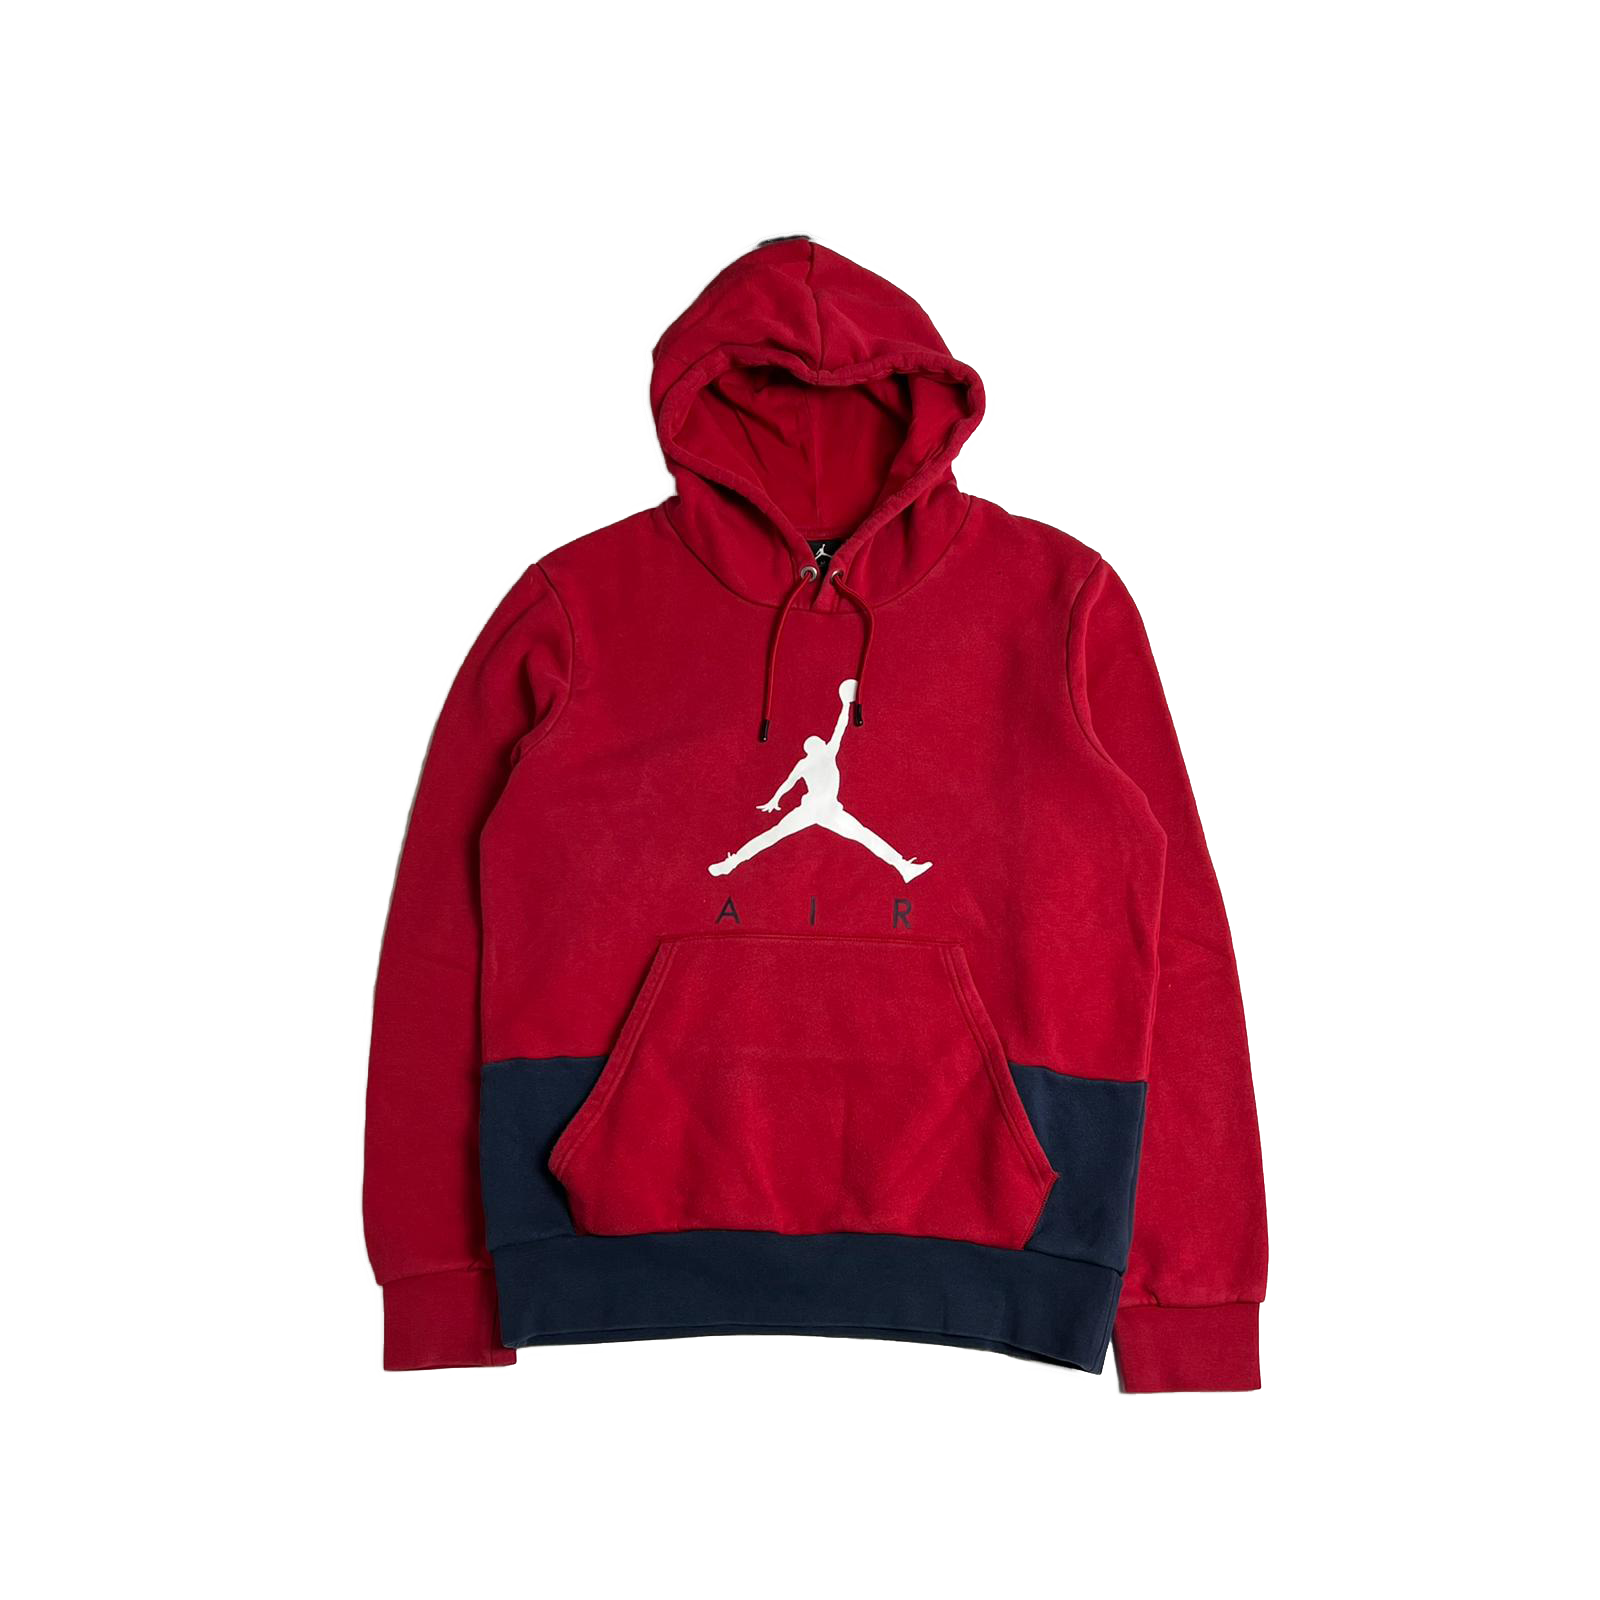 00's Nike Jordan hoodie